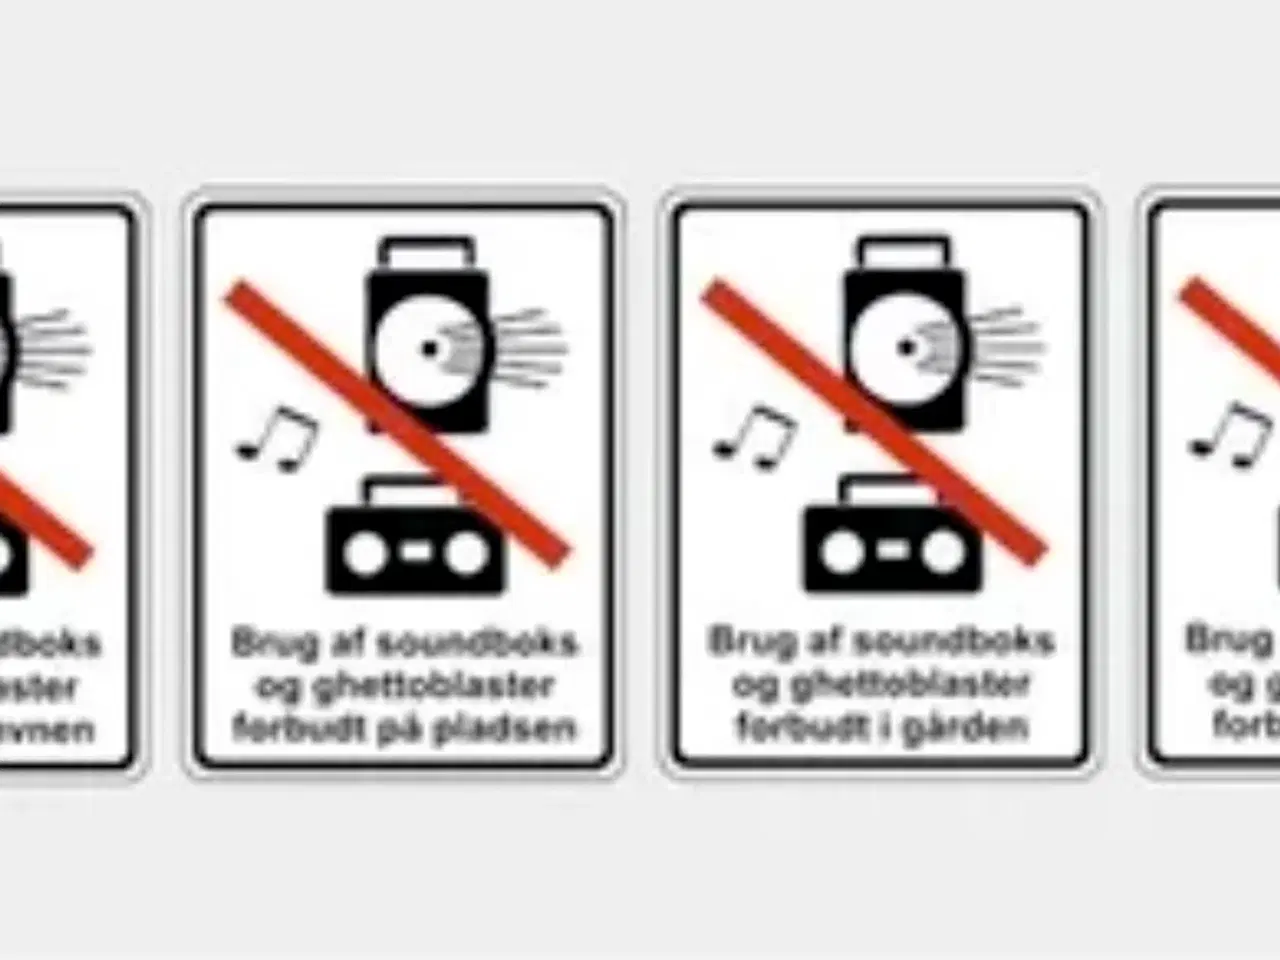 Billede 3 - Skilte "Brug af soundboks og ghettoblaster forbudt